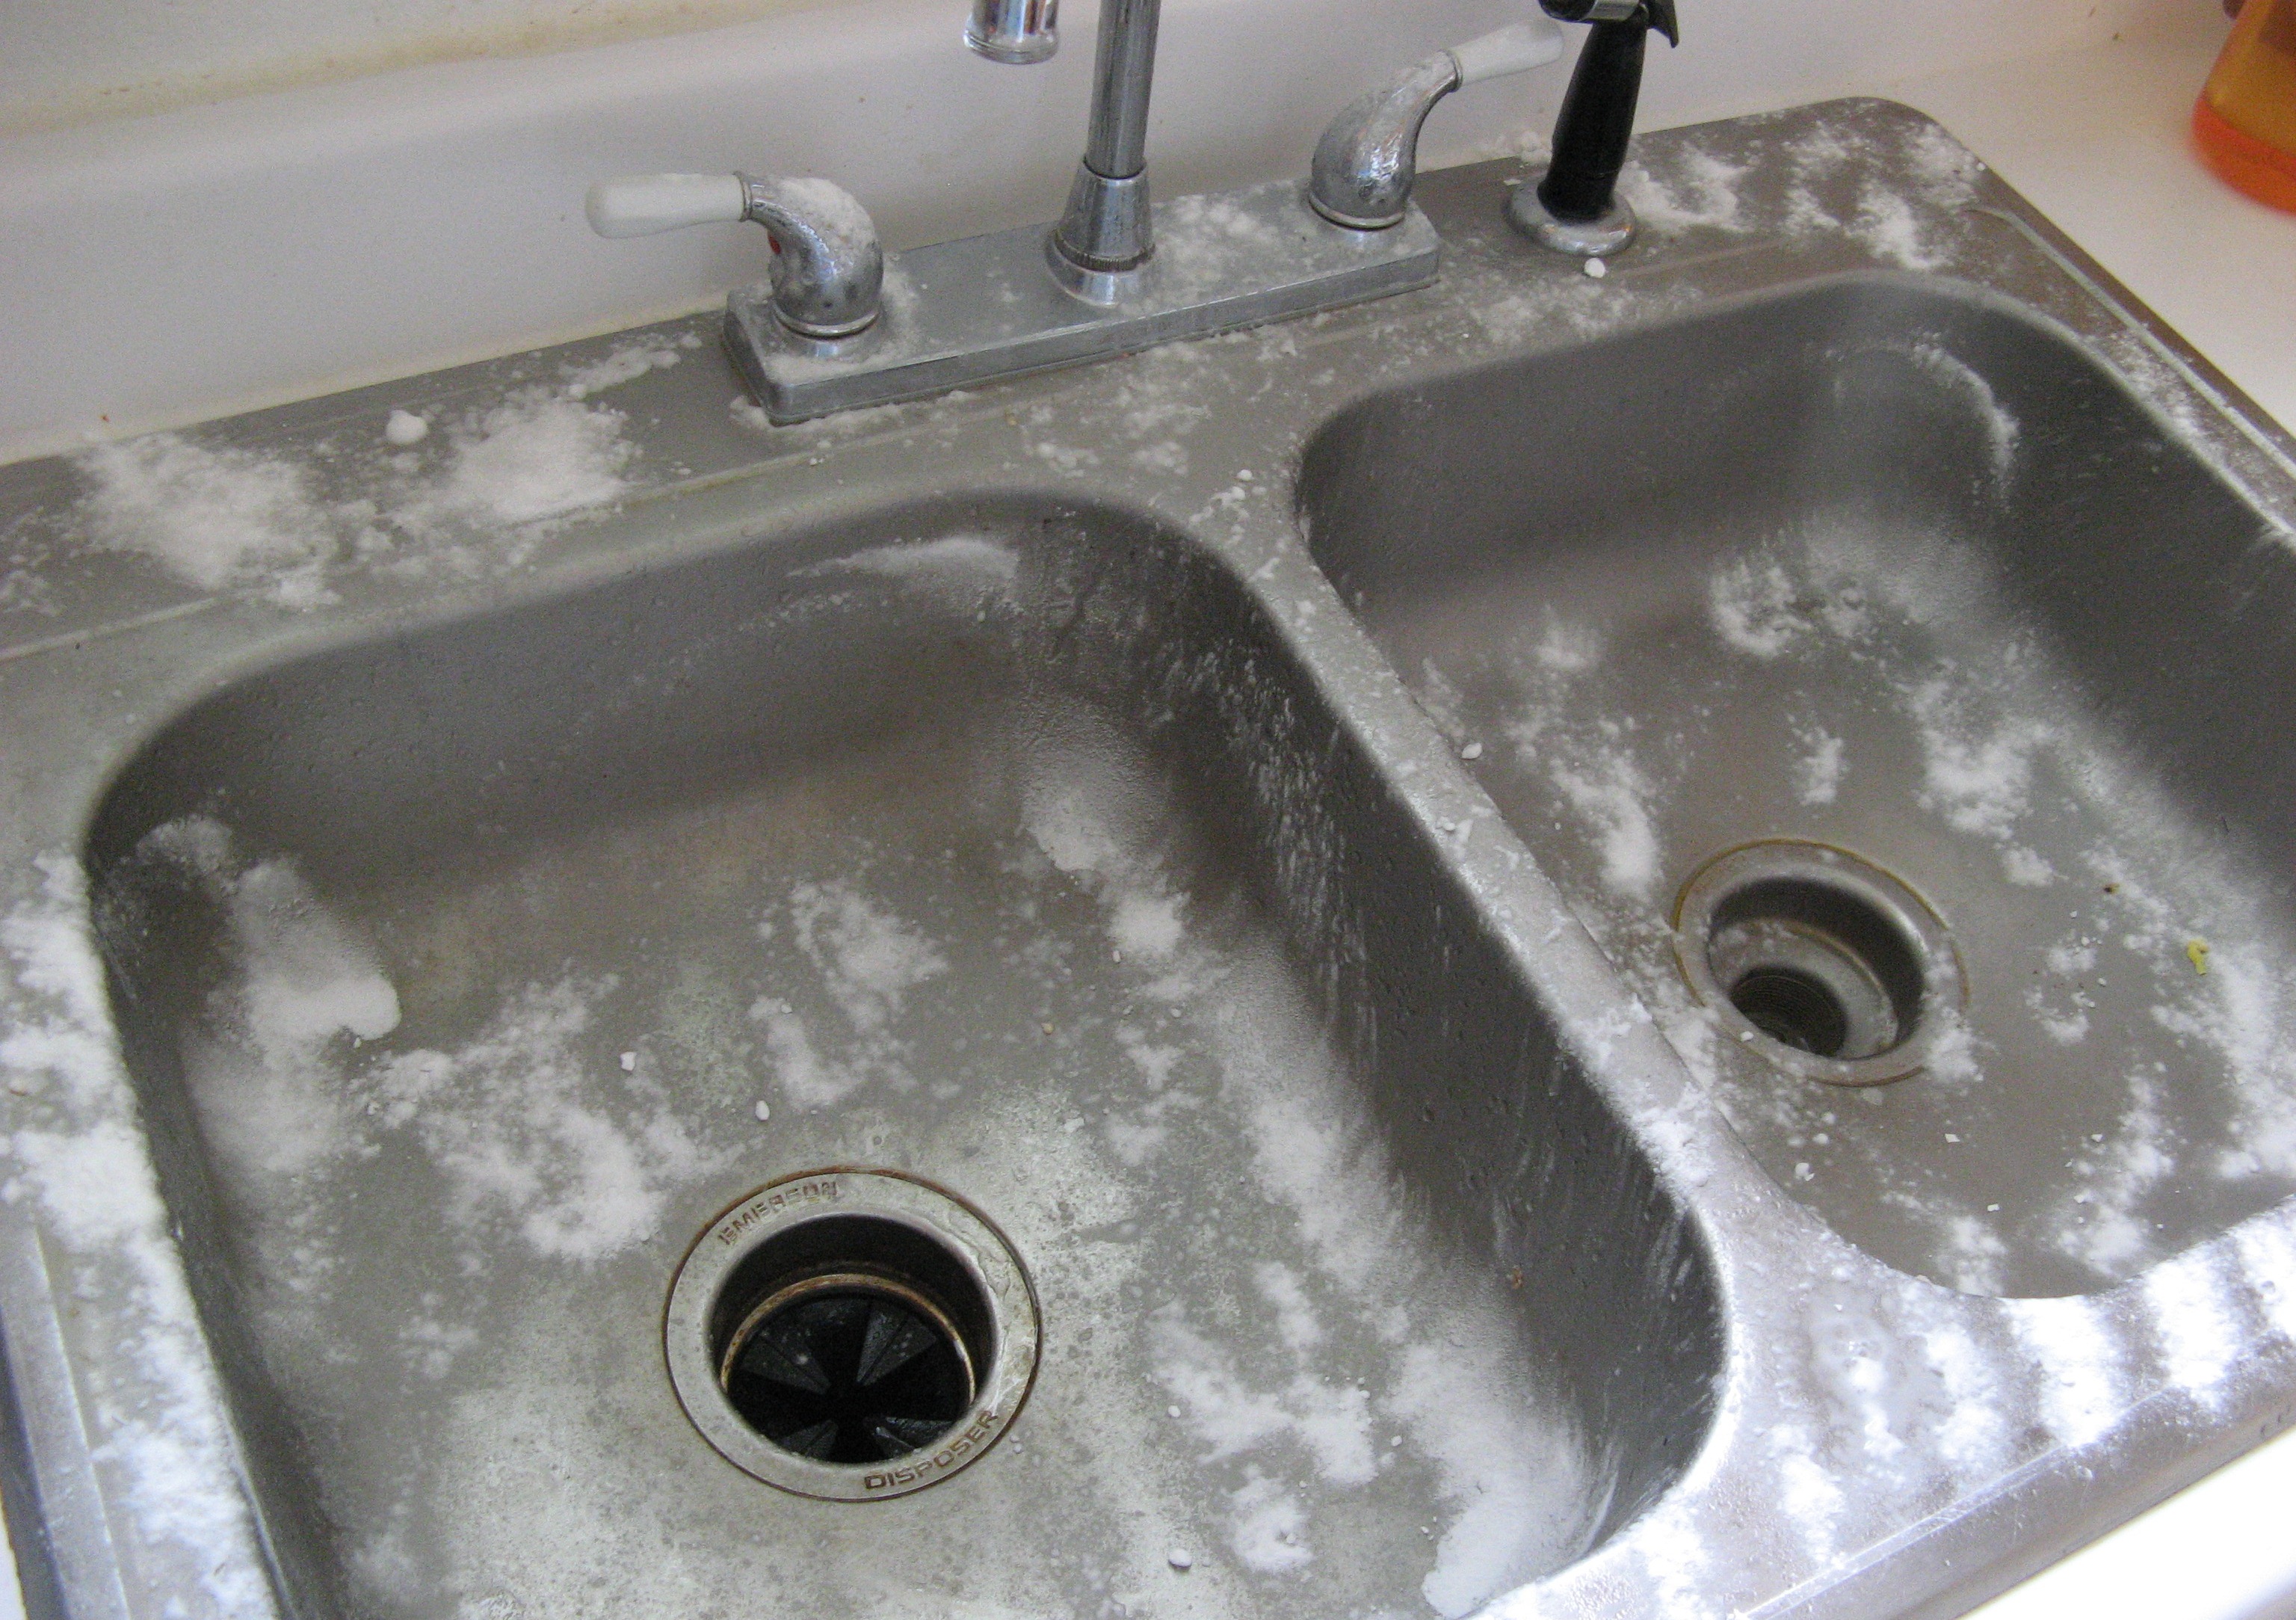 clr for kitchen sink